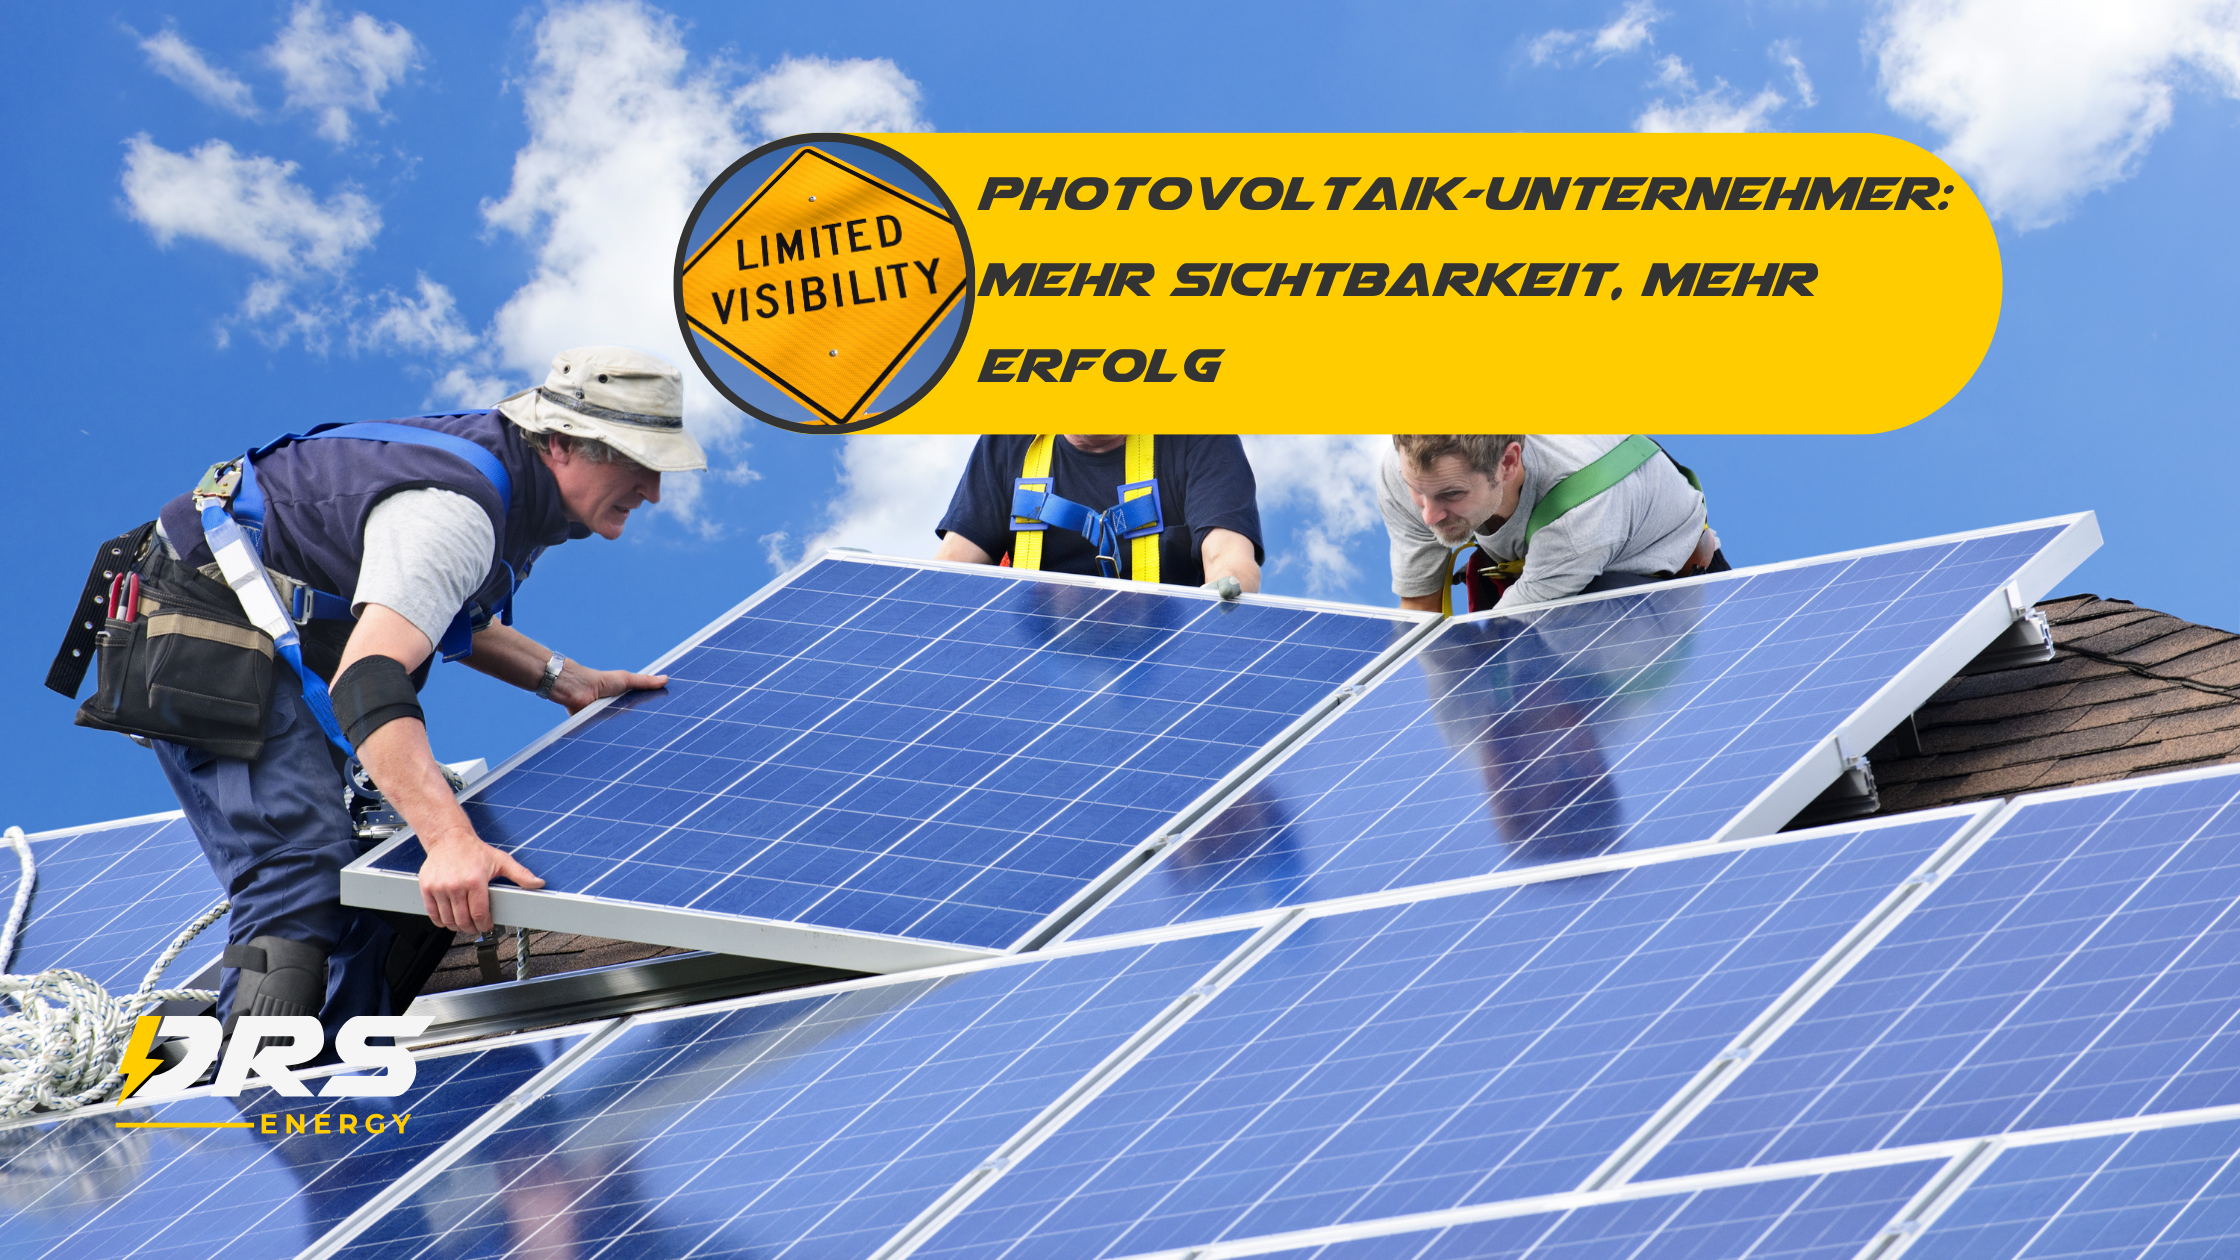 Photovoltaik-Unternehmer: Mehr Sichtbarkeit, mehr Erfolg